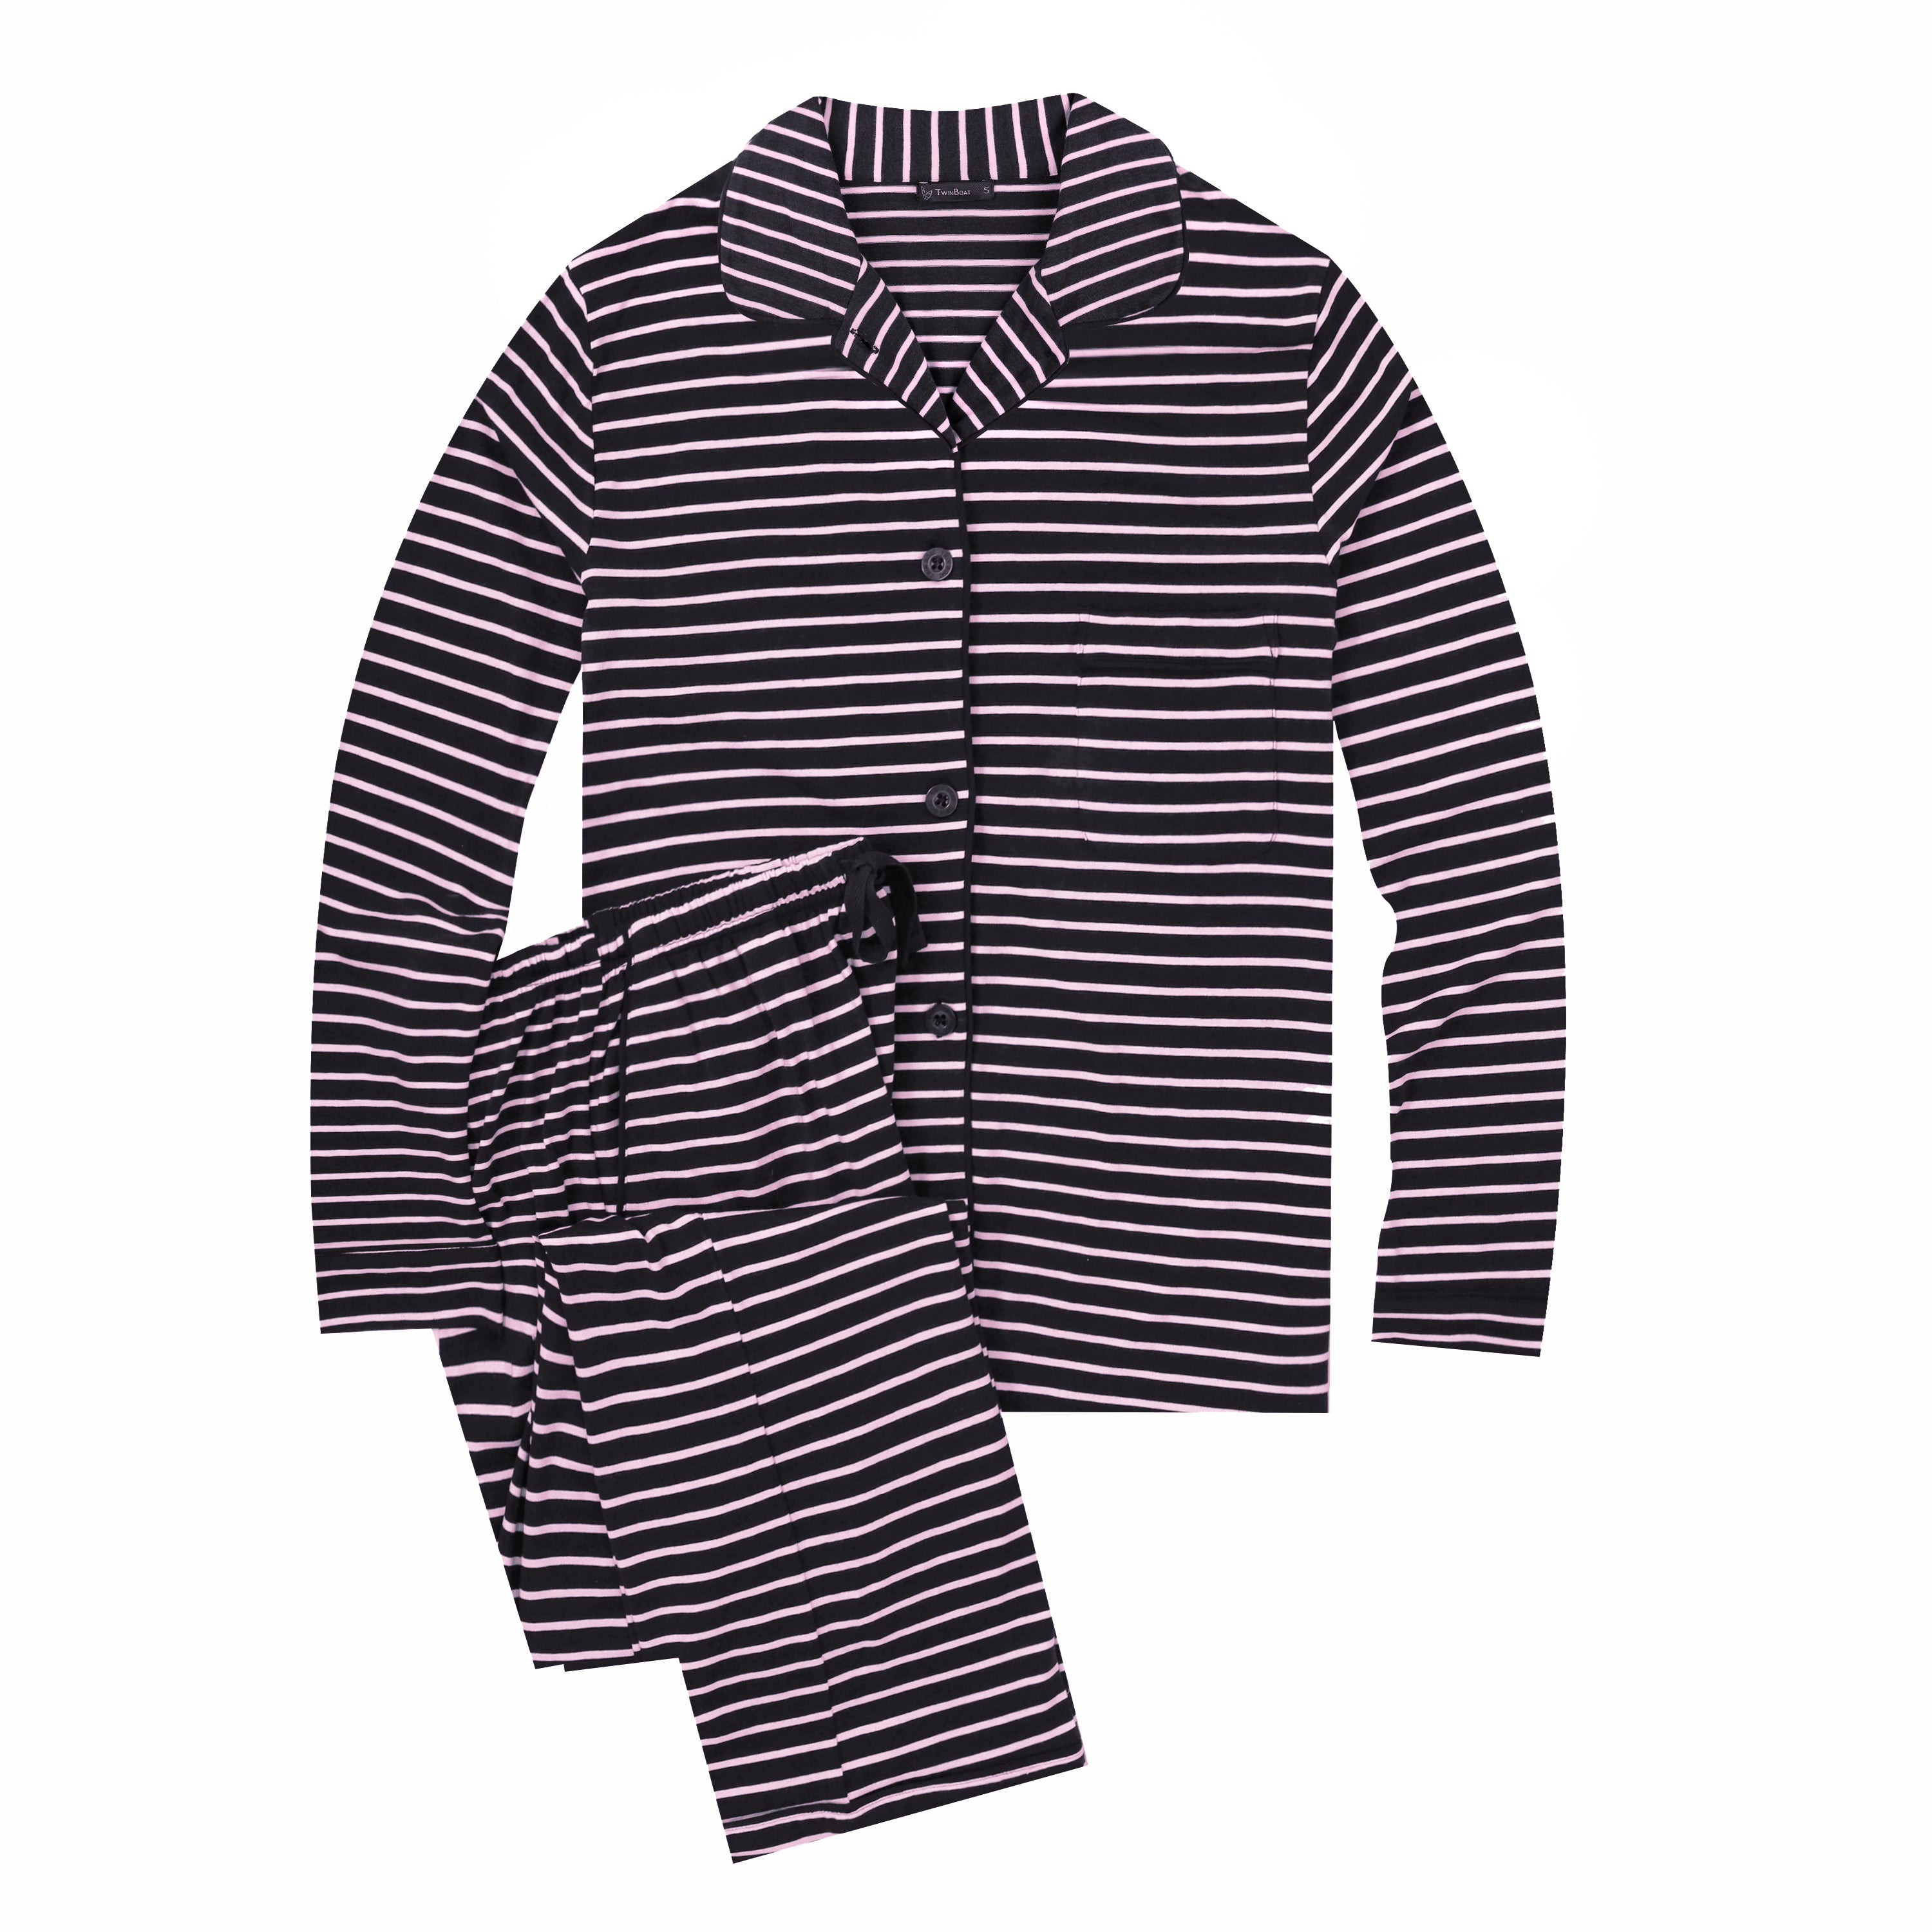 Twin Boat Women's Soft Knit Jersey Pajama Sets